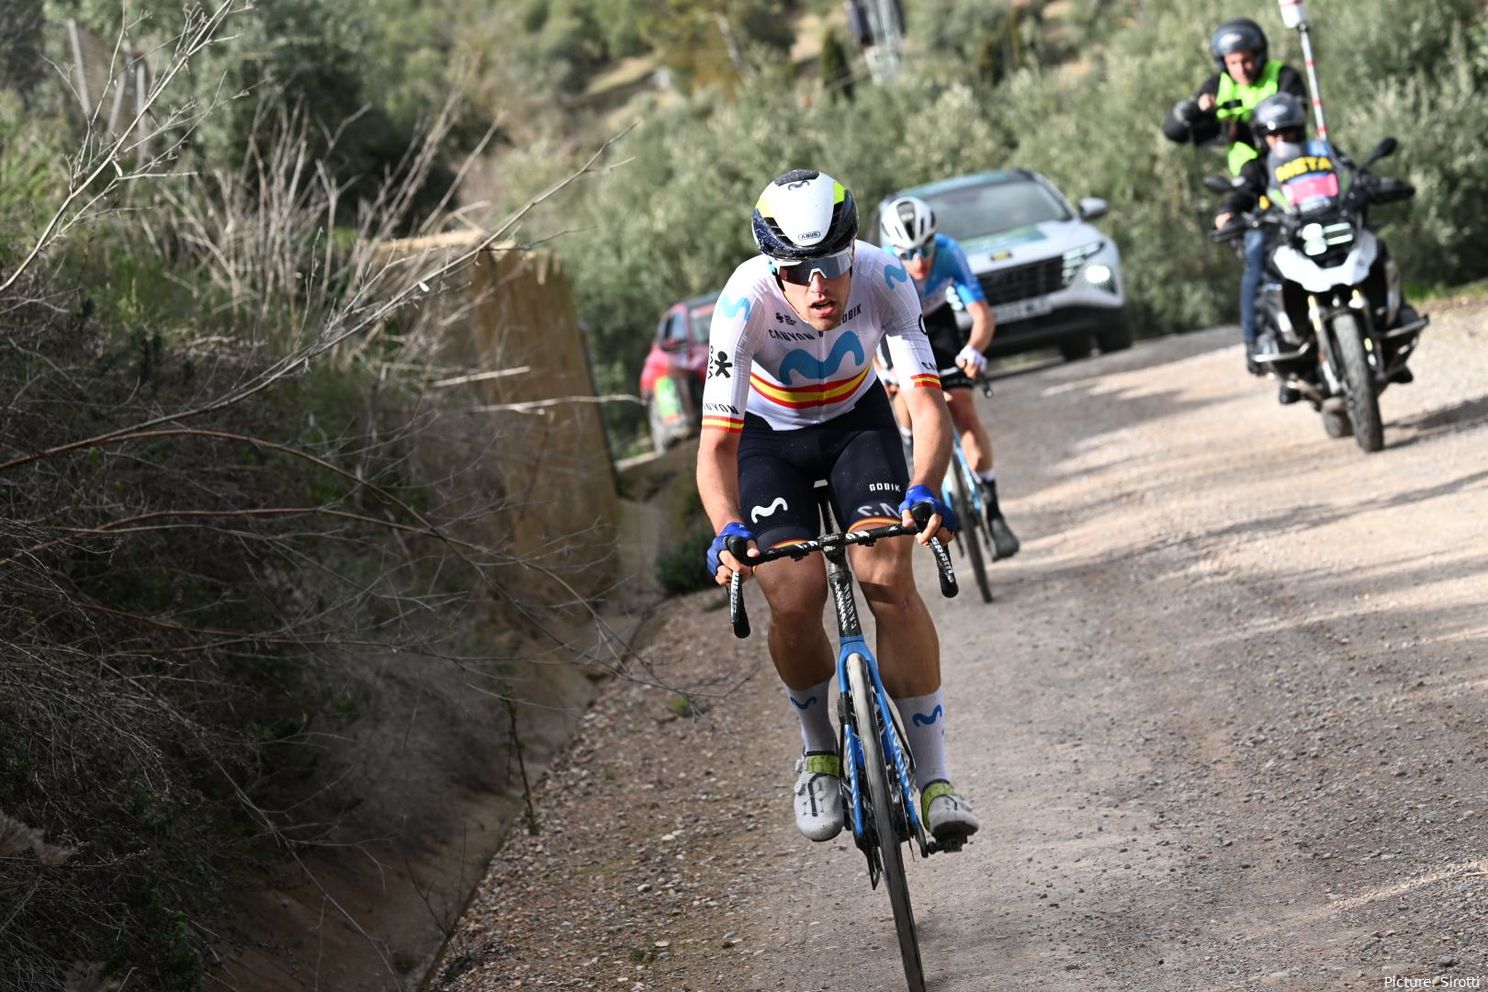 A Movistar leva 13 ciclistas para conquistar o Campeonato de Espanha, com Oier Lazkano, Pelayo Sánchez e Alex Aranburu na liderança